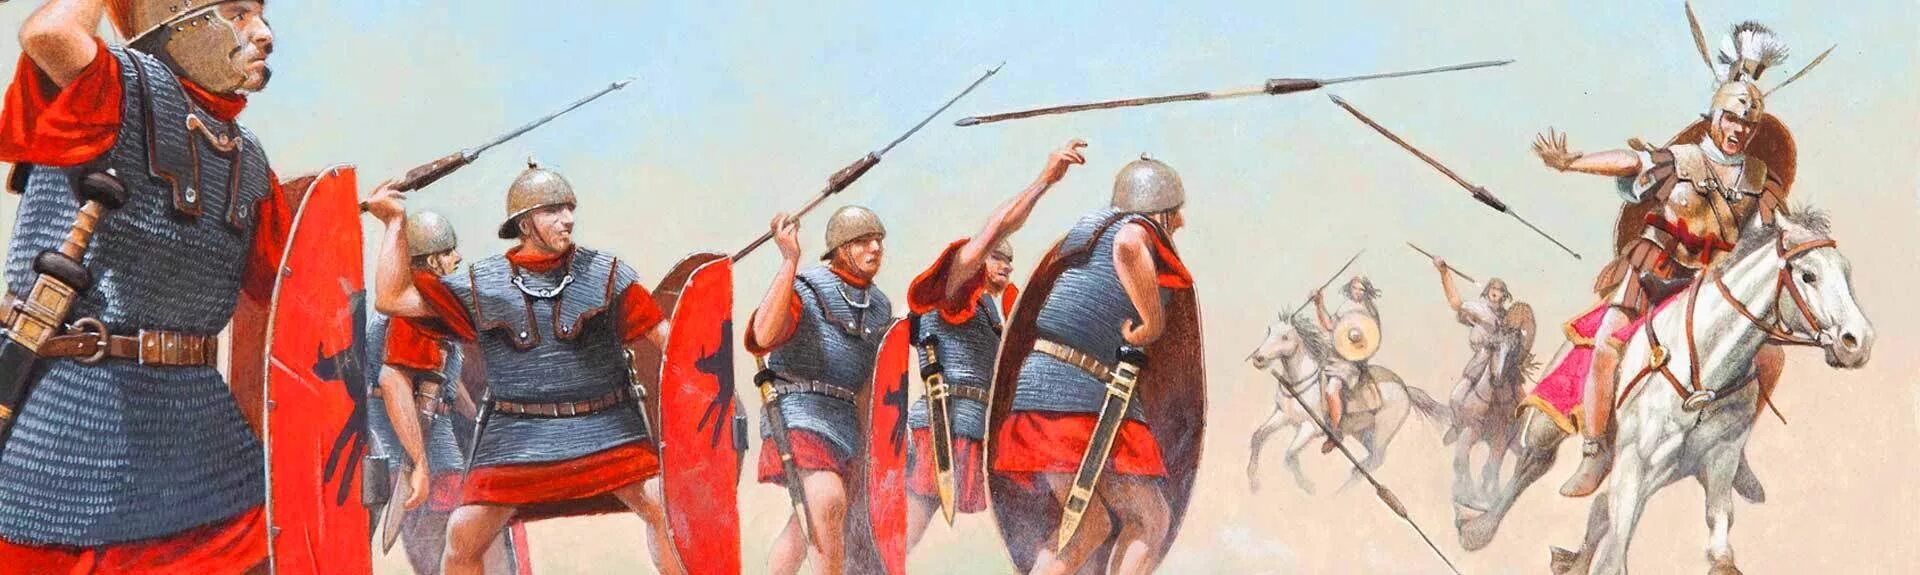 Римский Легион сражение. Гражданские войны в древнем Риме. Картина Римский Легион Византия. Преторианская конница. Участники гражданской войны в риме